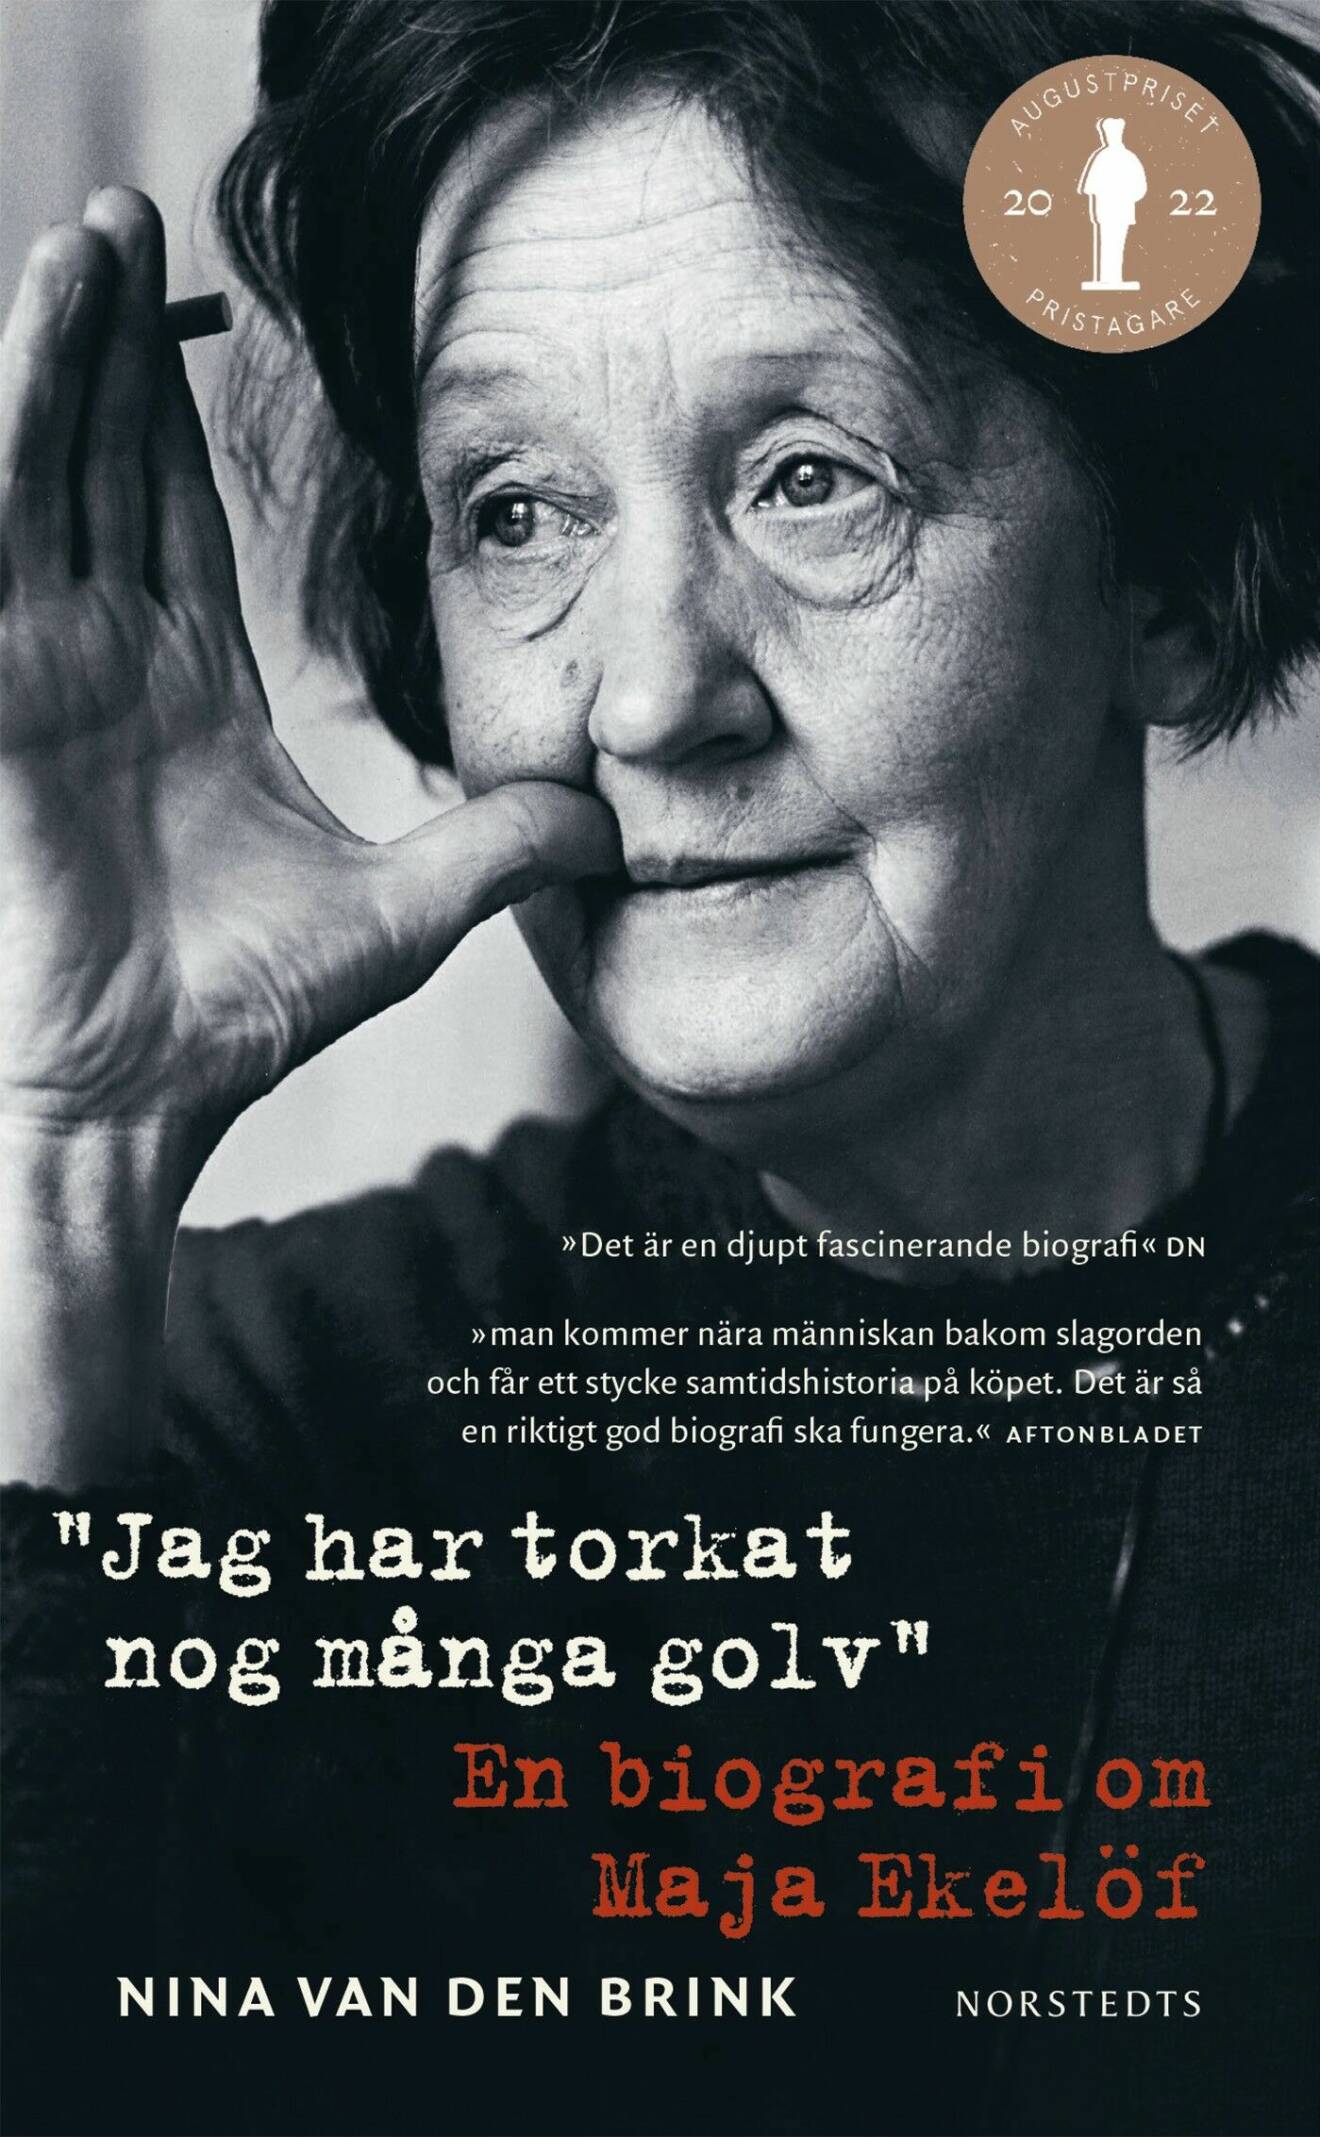 Jag har torkat nog många golv: en ­biografi om Maja Ekelöf av Nina van den Brink.